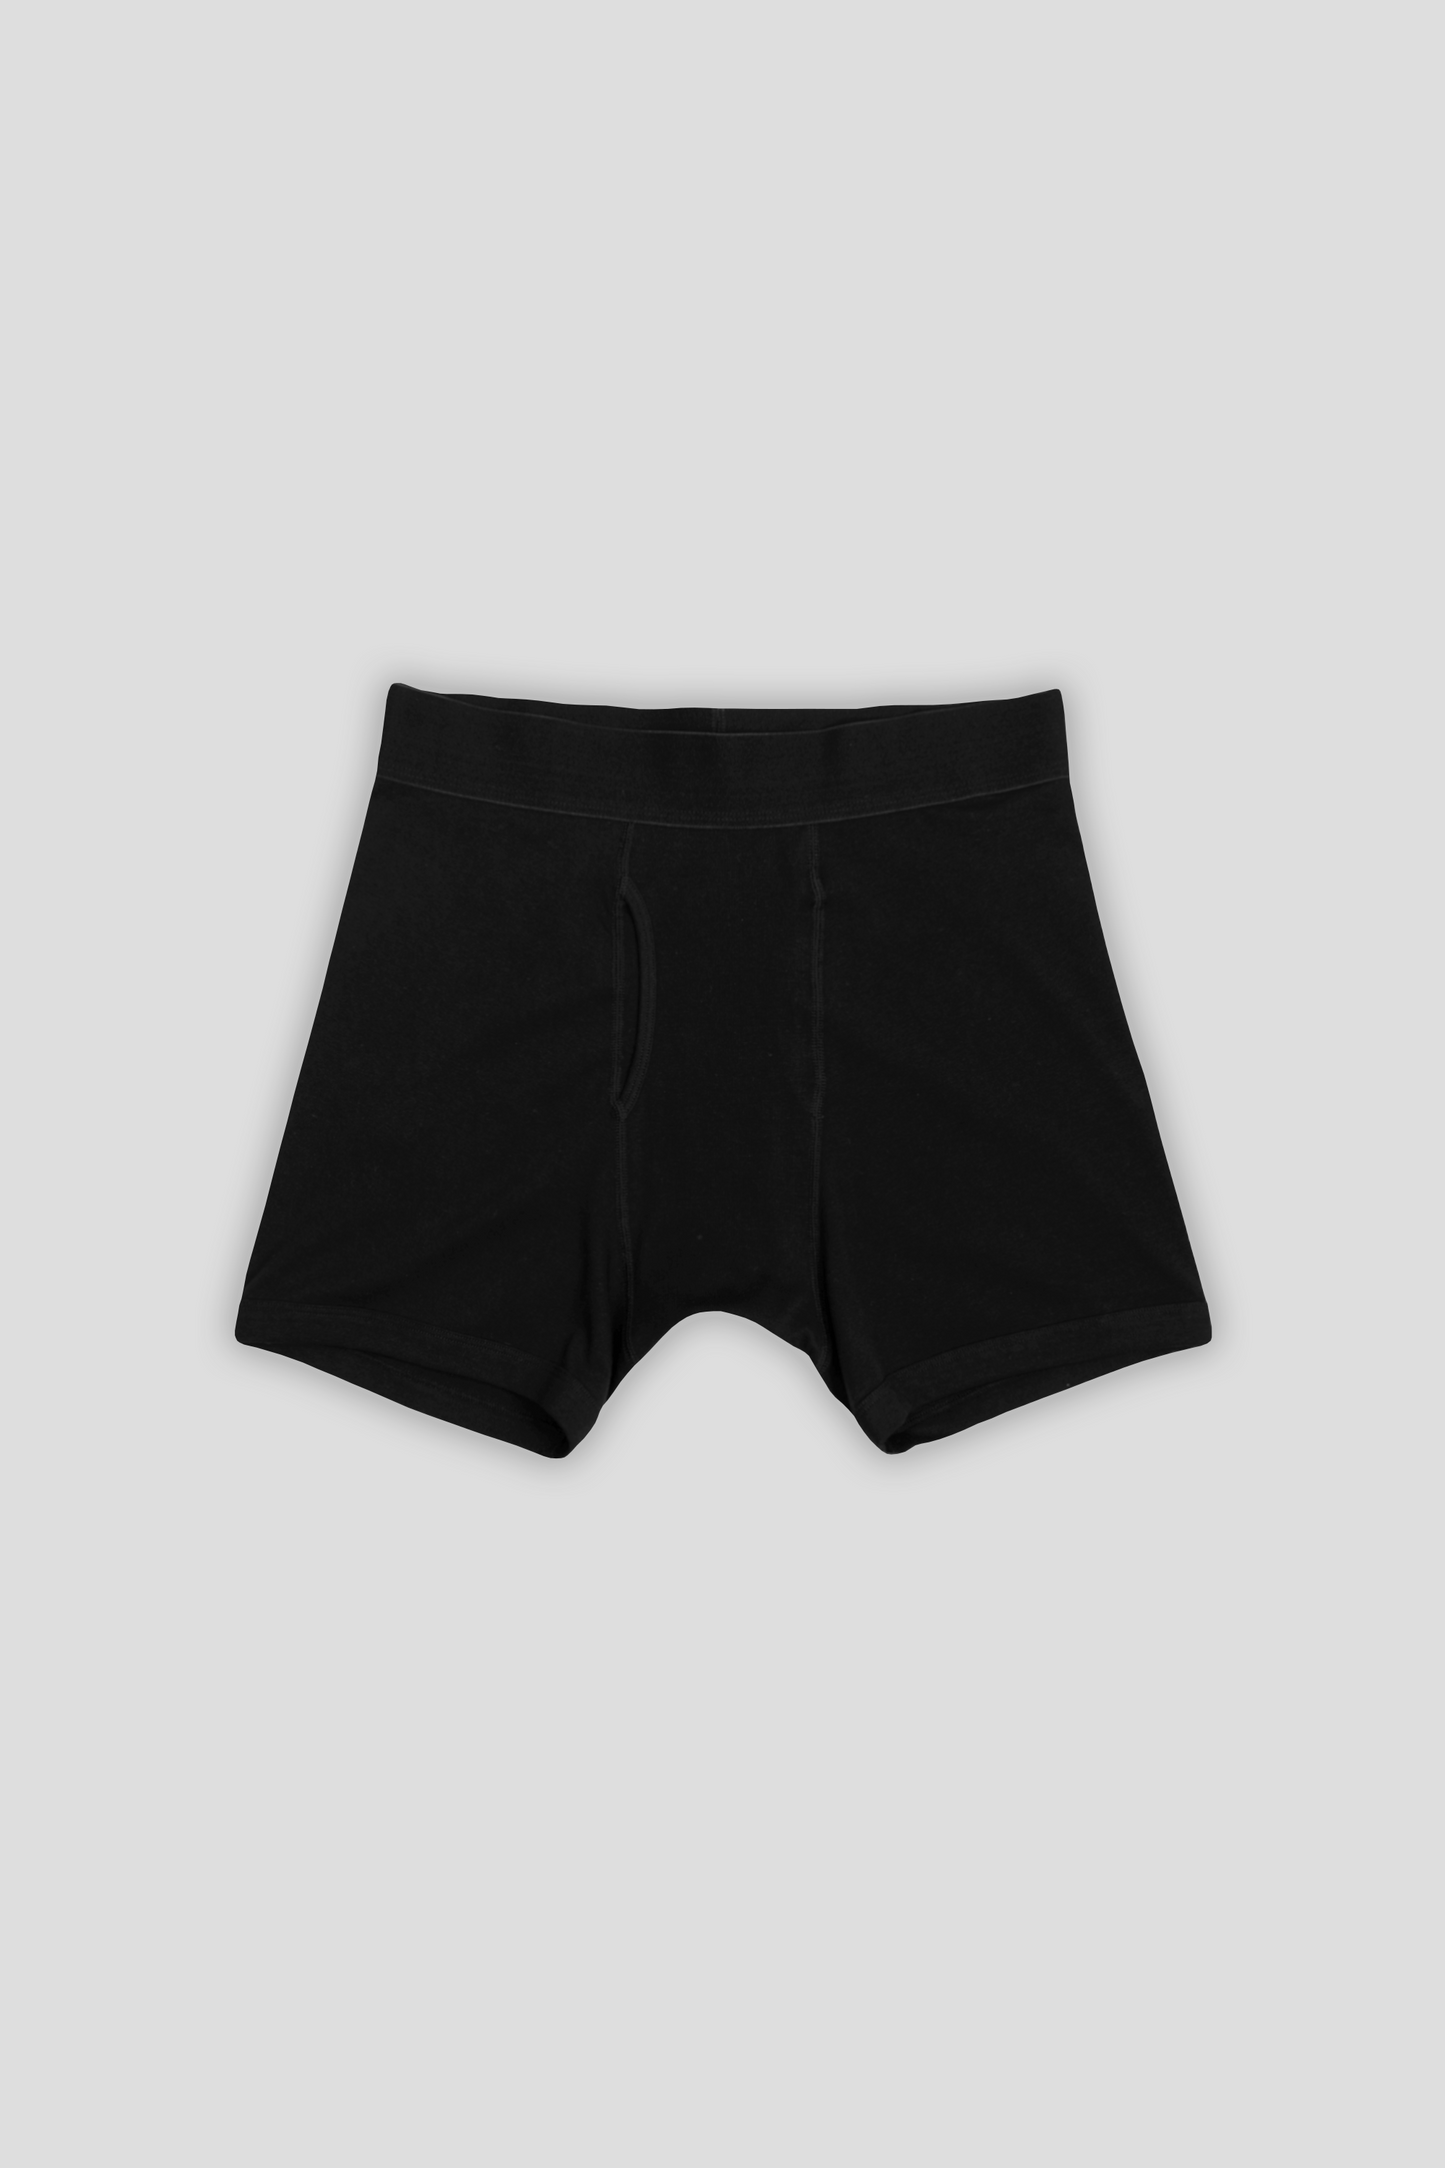 Boxer Short 3-Pack Black